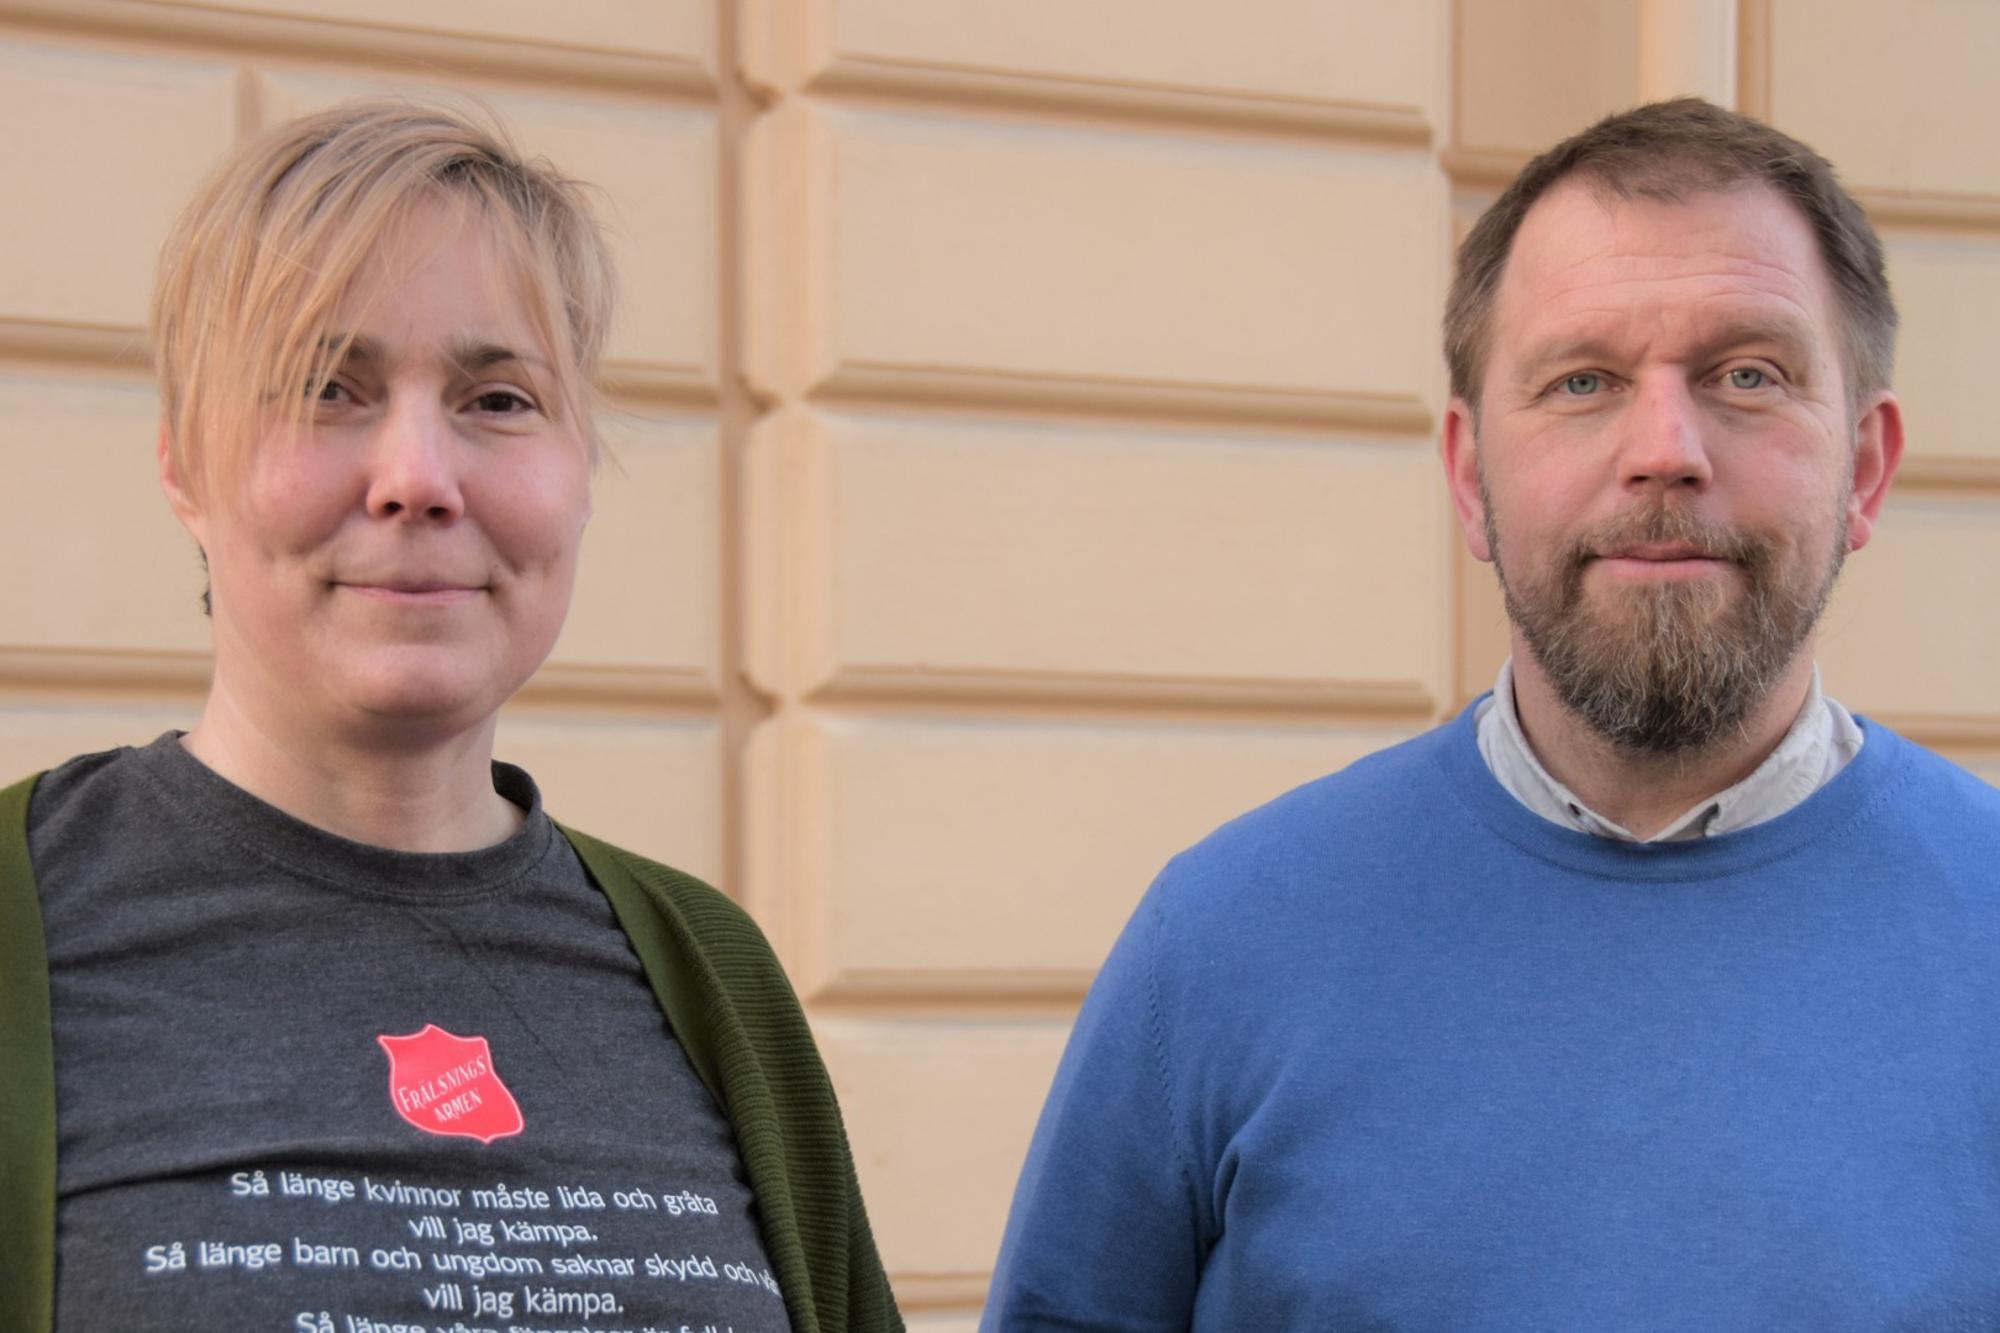 Brobygget i Uppsala arbetar med att stödja personer i hemlöshet